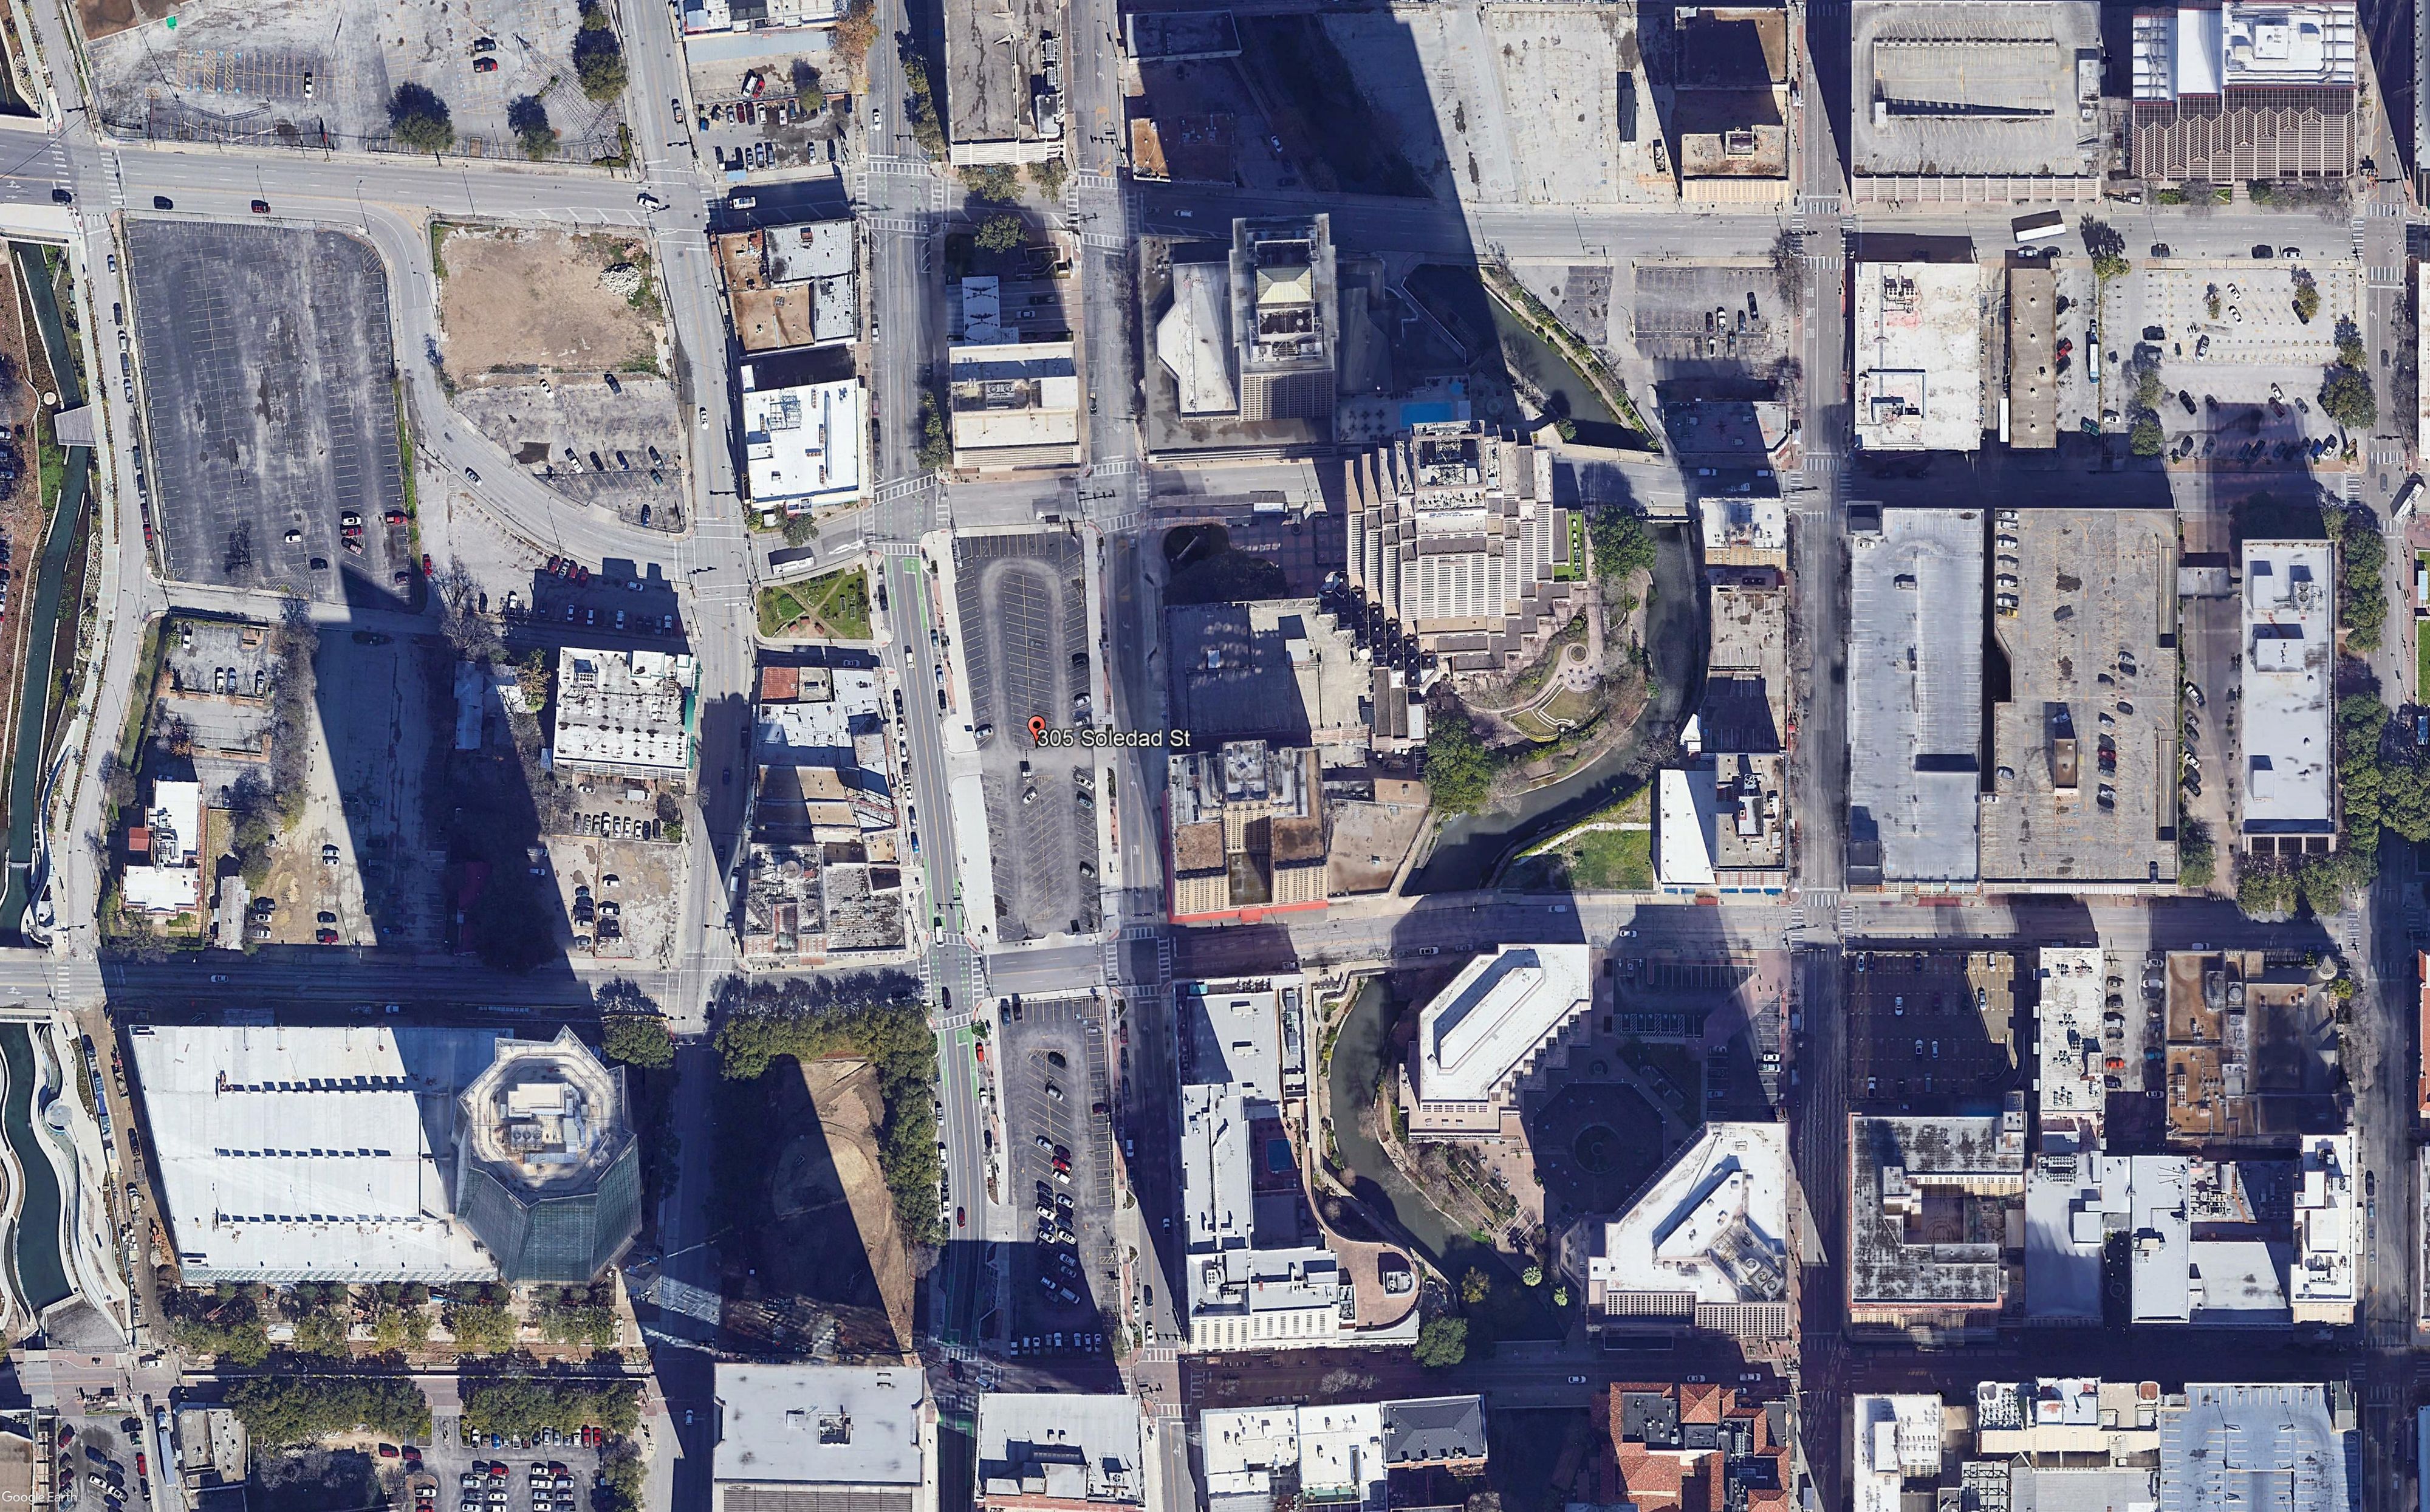 Google Earth.jpg